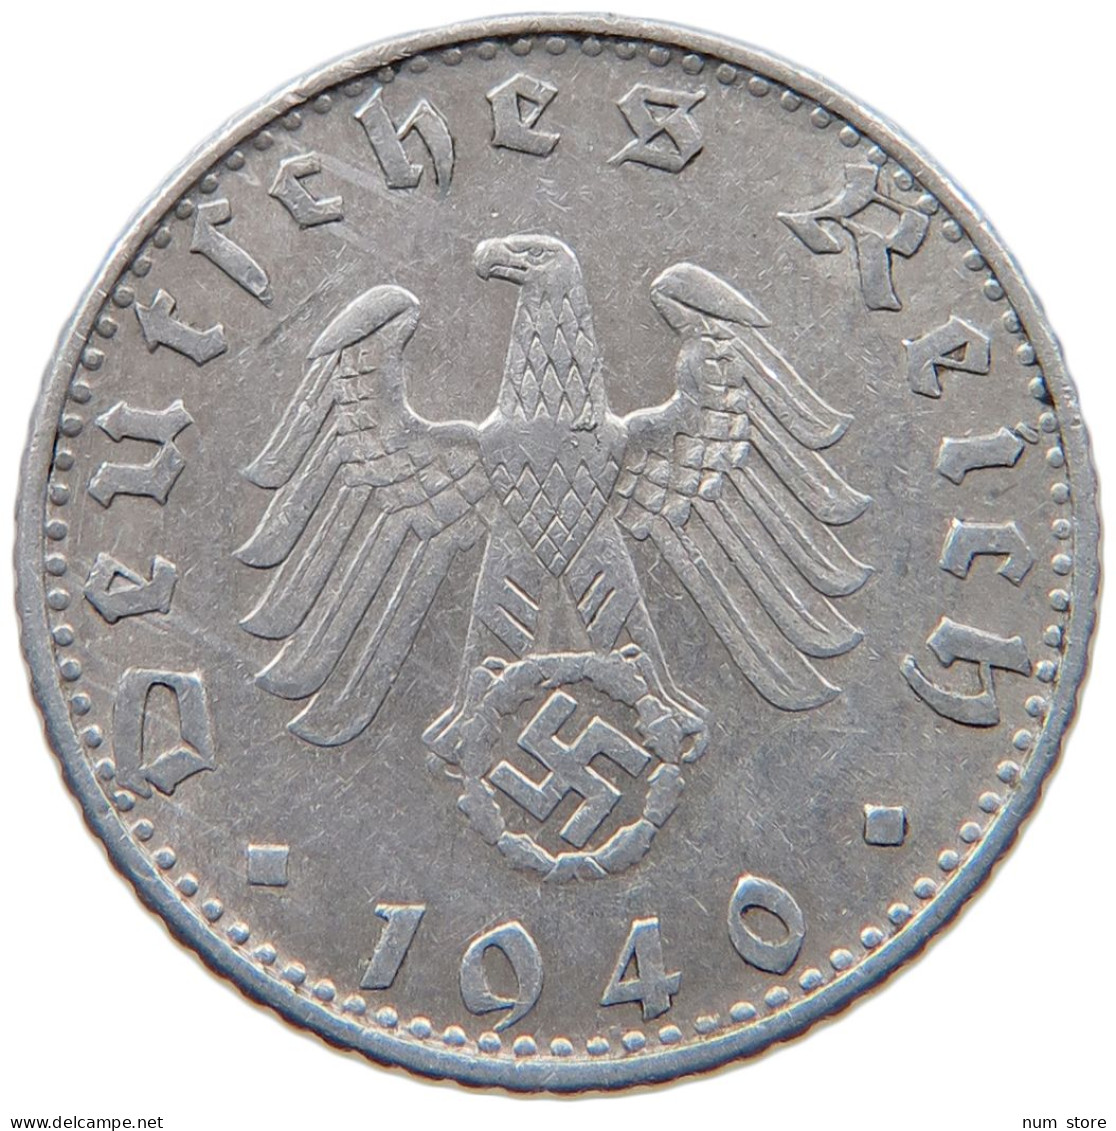 GERMANY 50 REICHSPFENNIG 1940 B #s095 0203 - 50 Reichspfennig